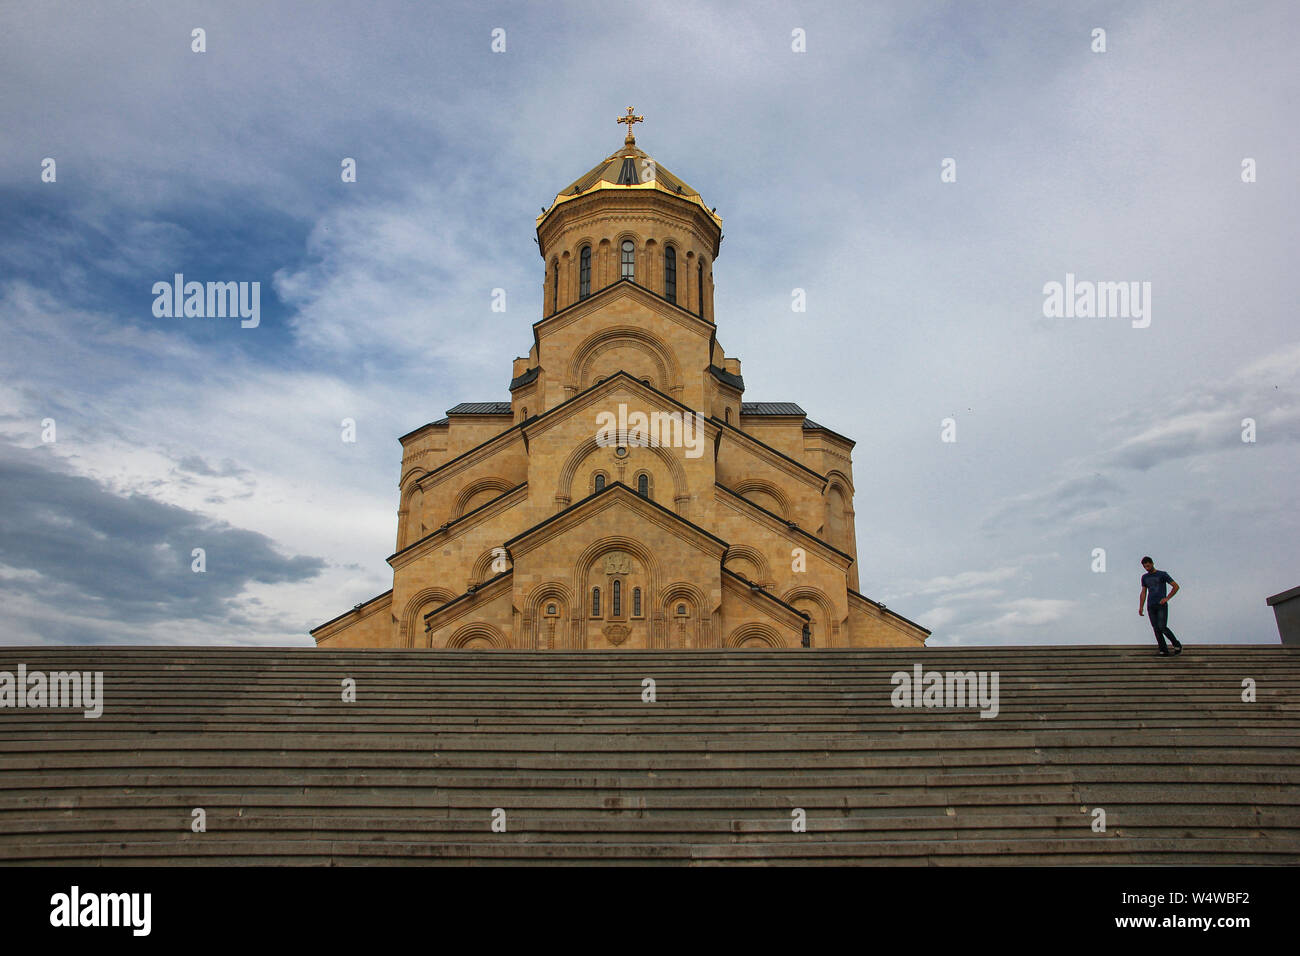 La Cattedrale del Grand Trinità. Il terzo più grande tempio ortodosso nel mondo costruito per commemorare i 1500 anni del Patriarcato georgiano. Più su Foto Stock